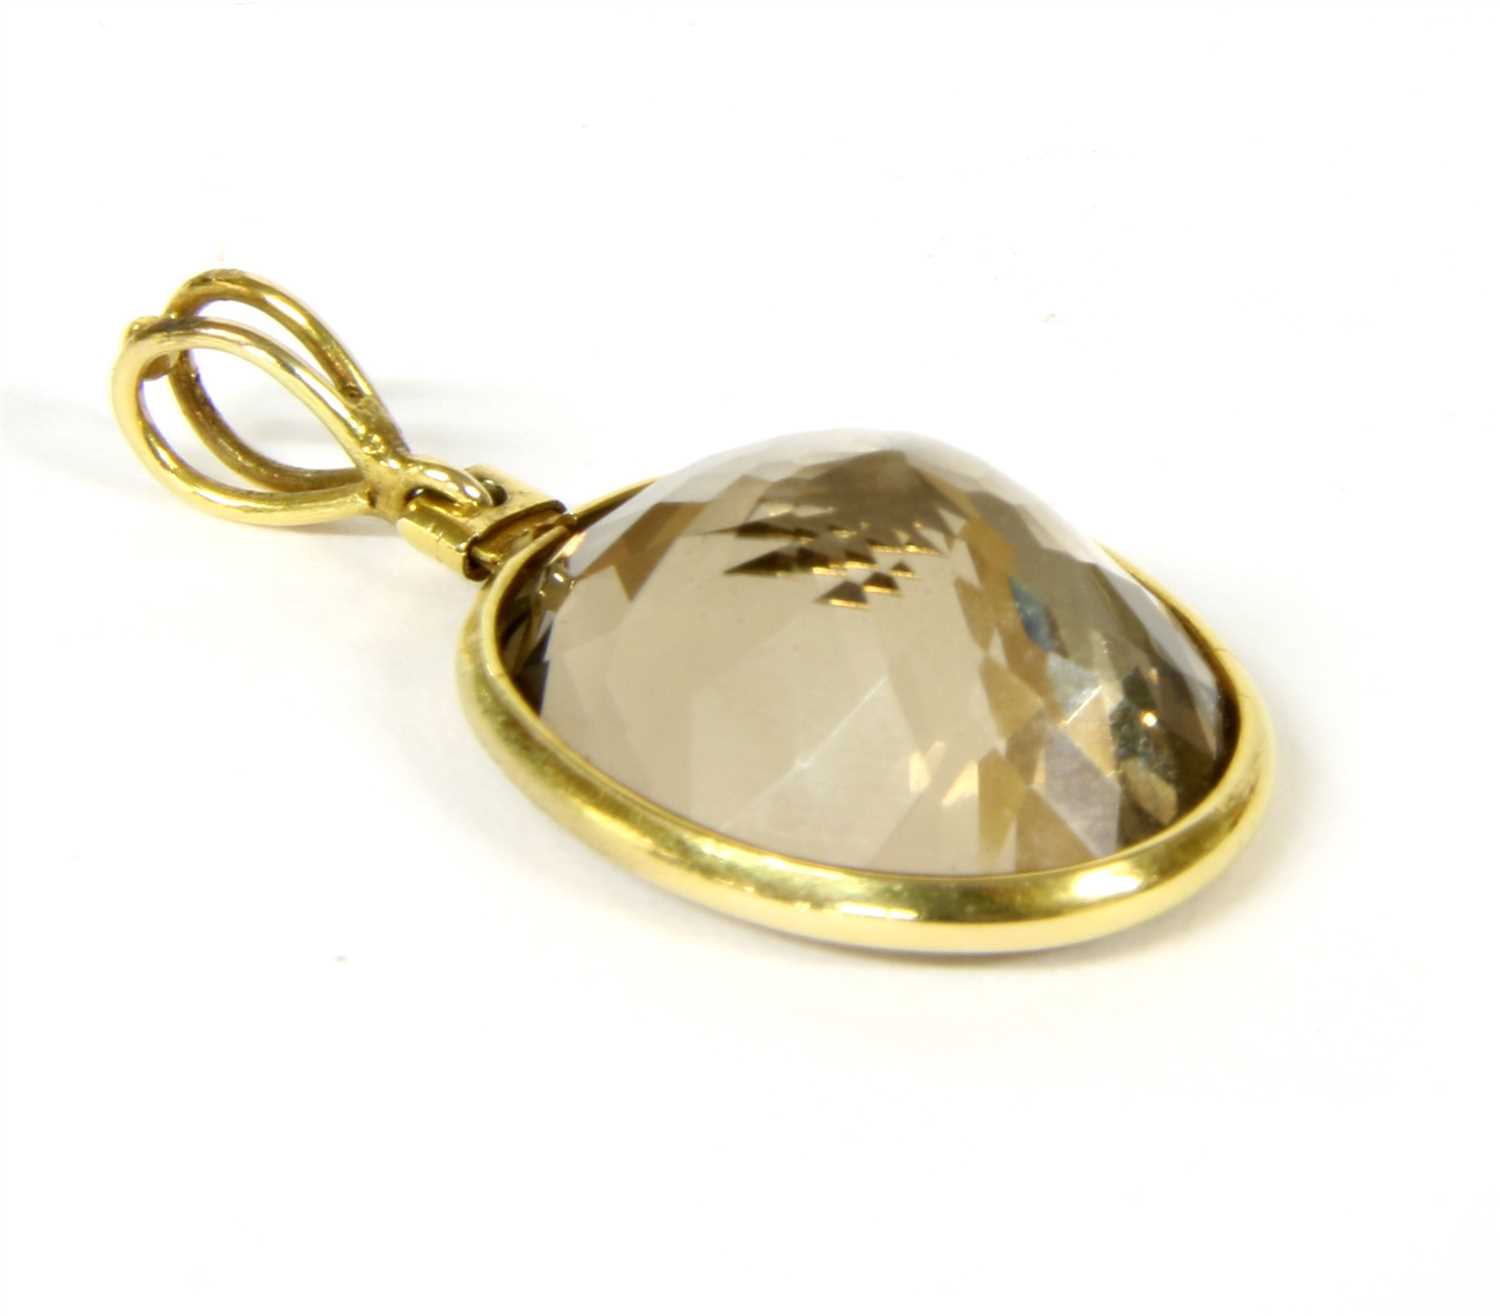 Lot 9 - A gold smokey quartz pendant